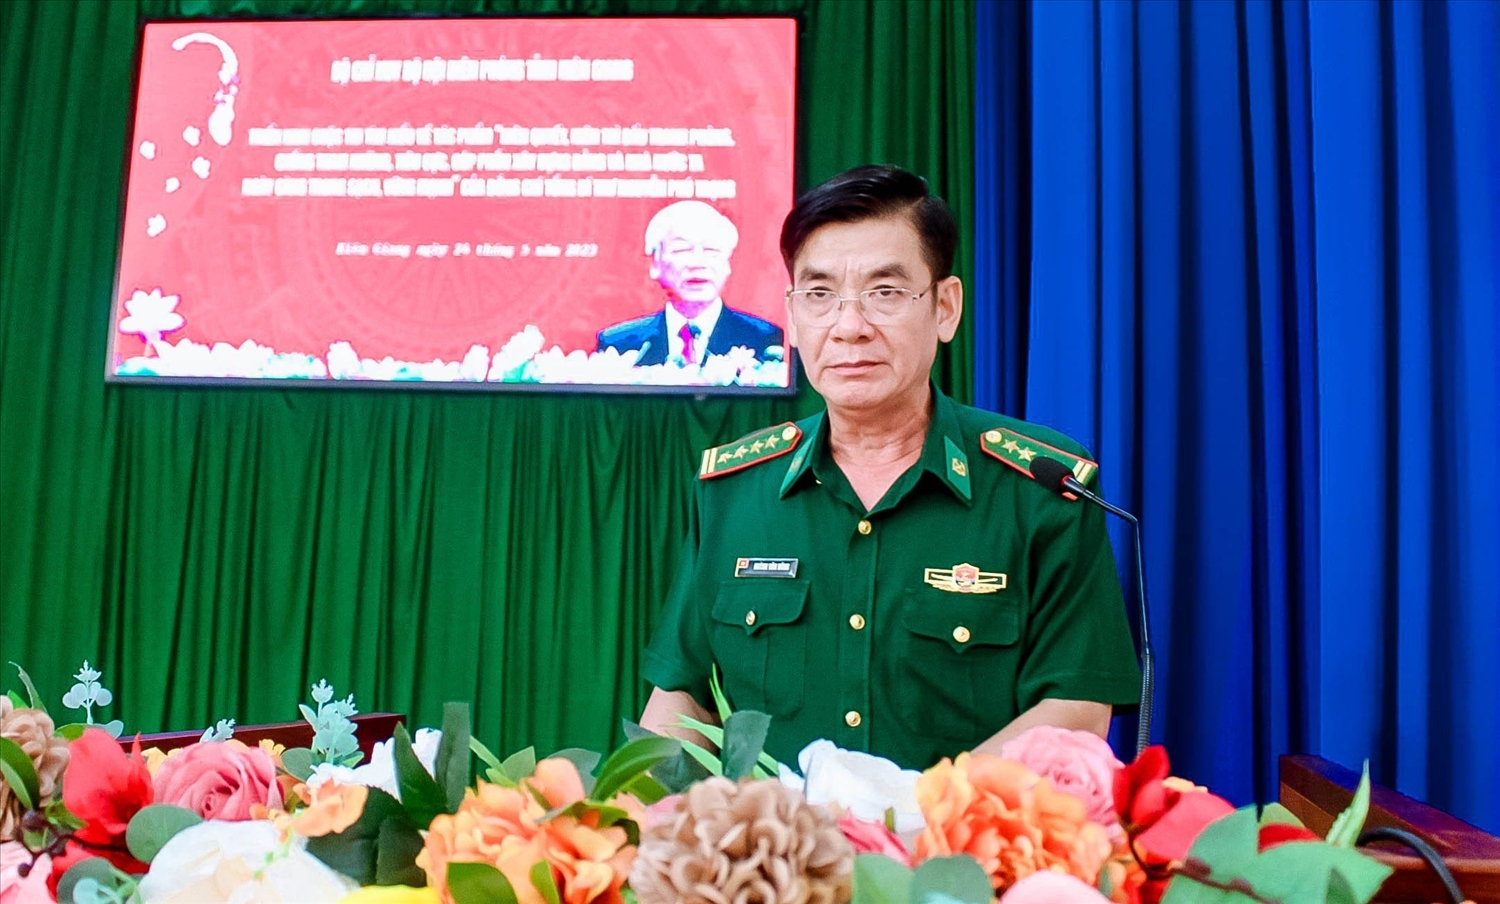 Đại tá Huỳnh Văn Đông Bí thư Đảng ủy, Chính ủy BĐBP tỉnh Kiên Giang phát biểu chỉ đạo triển khai Cuộc thi